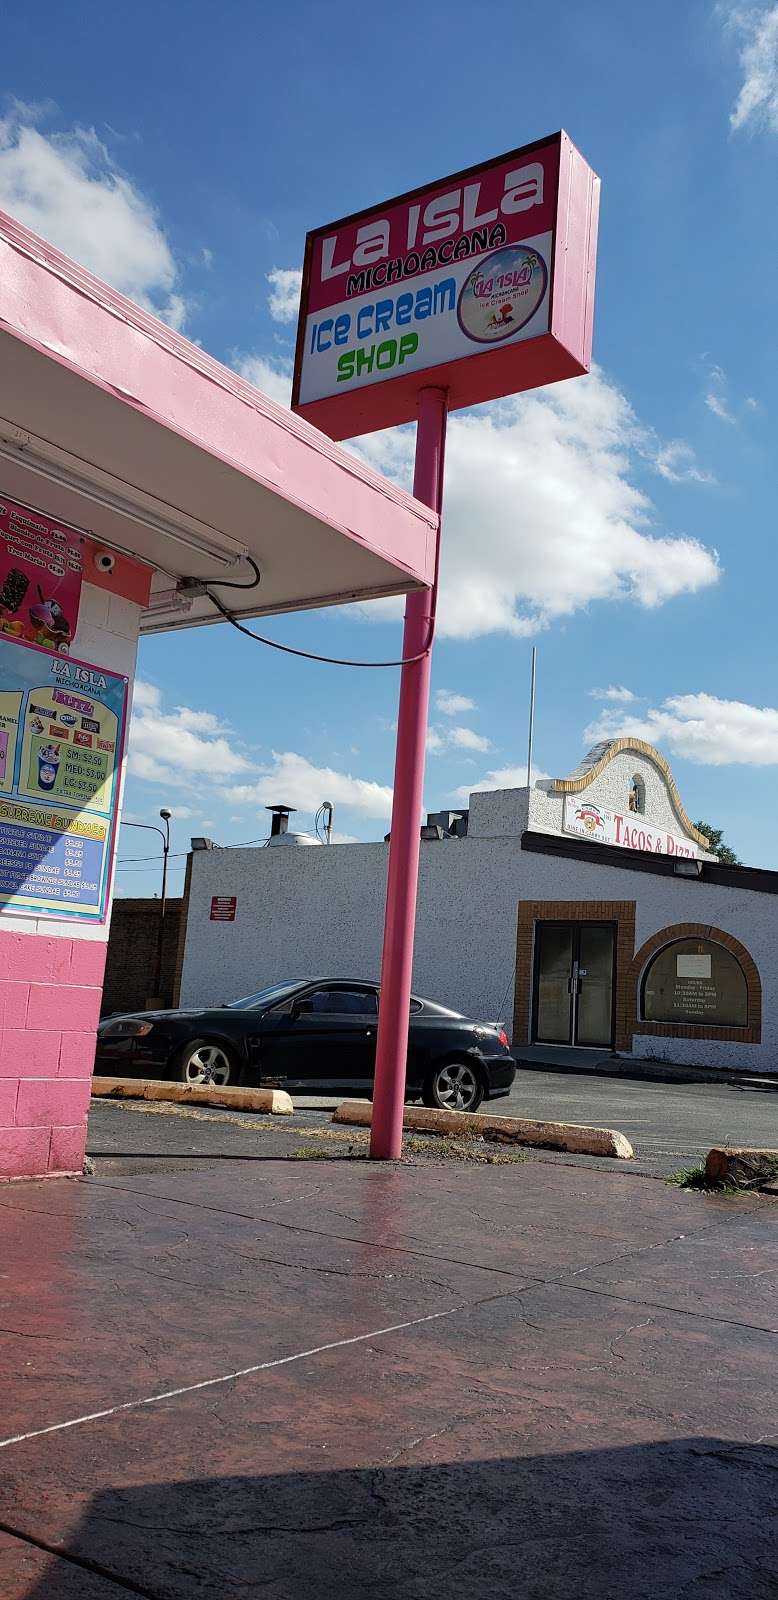 La Isla Michoacana Ice Cream Shop | 6817 Grand Ave, Hammond, IN 46323